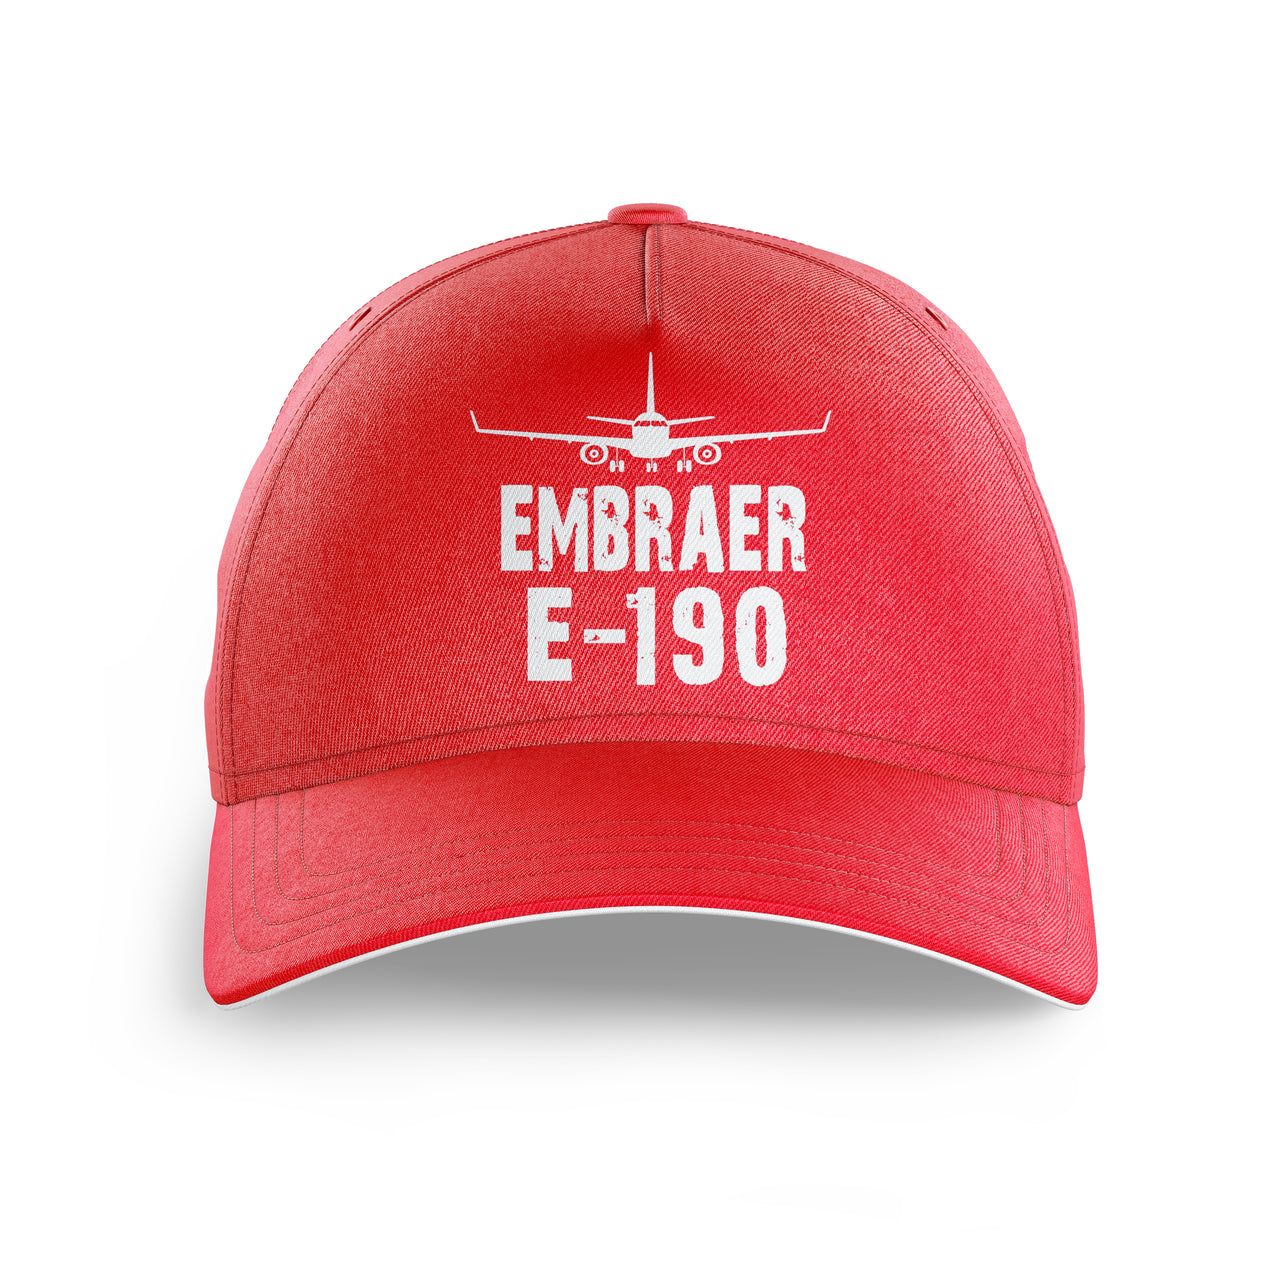 Embraer E-190 & Plane Printed Hats